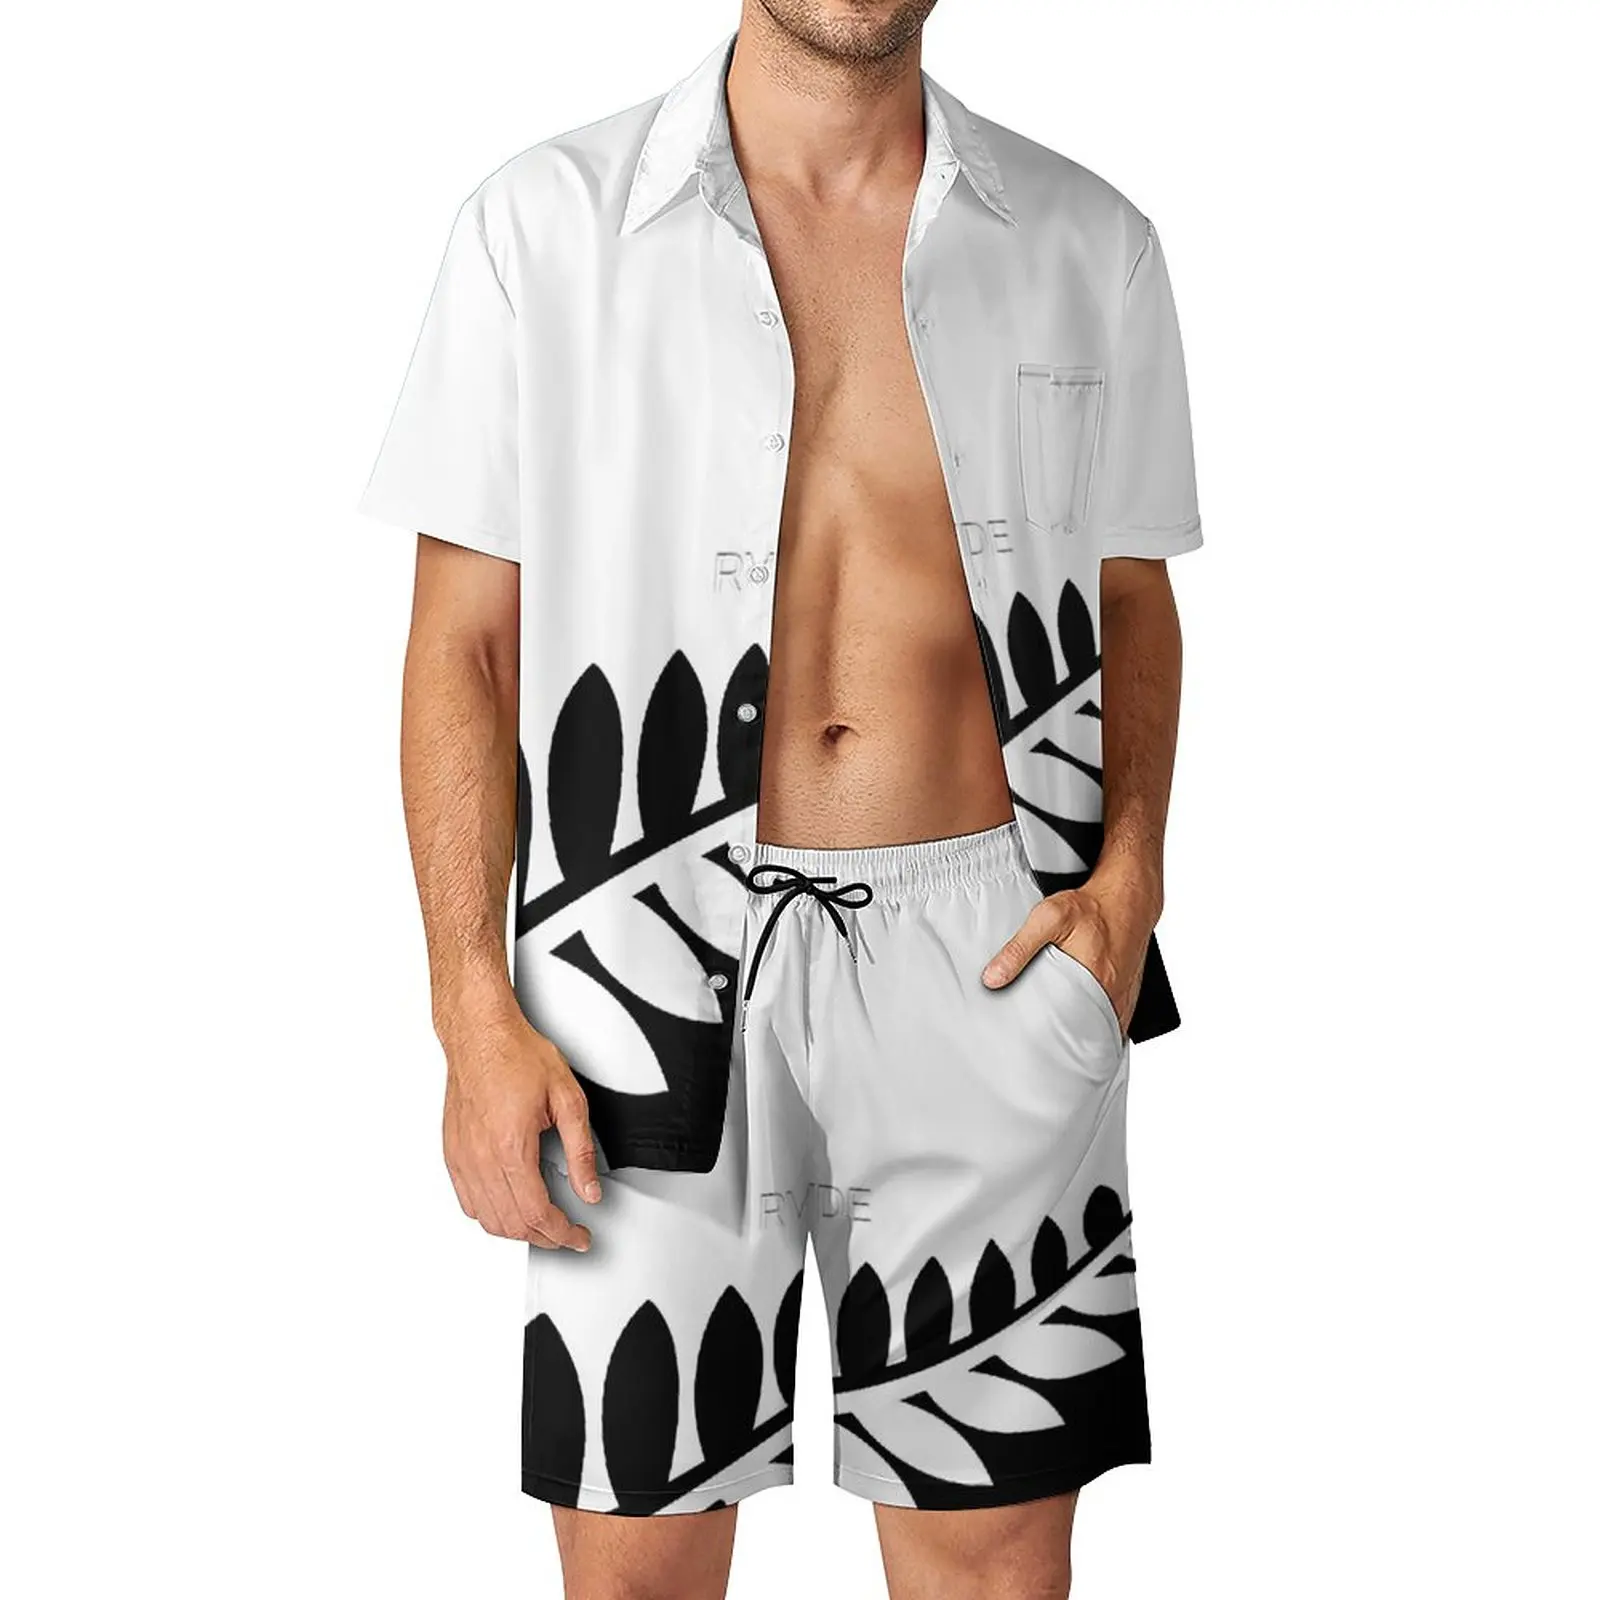 

Мужской пляжный костюм с новозеландским черно-белым флагом, высококачественный костюм из 2 предметов, пляжный костюм высшего качества, европейские размеры